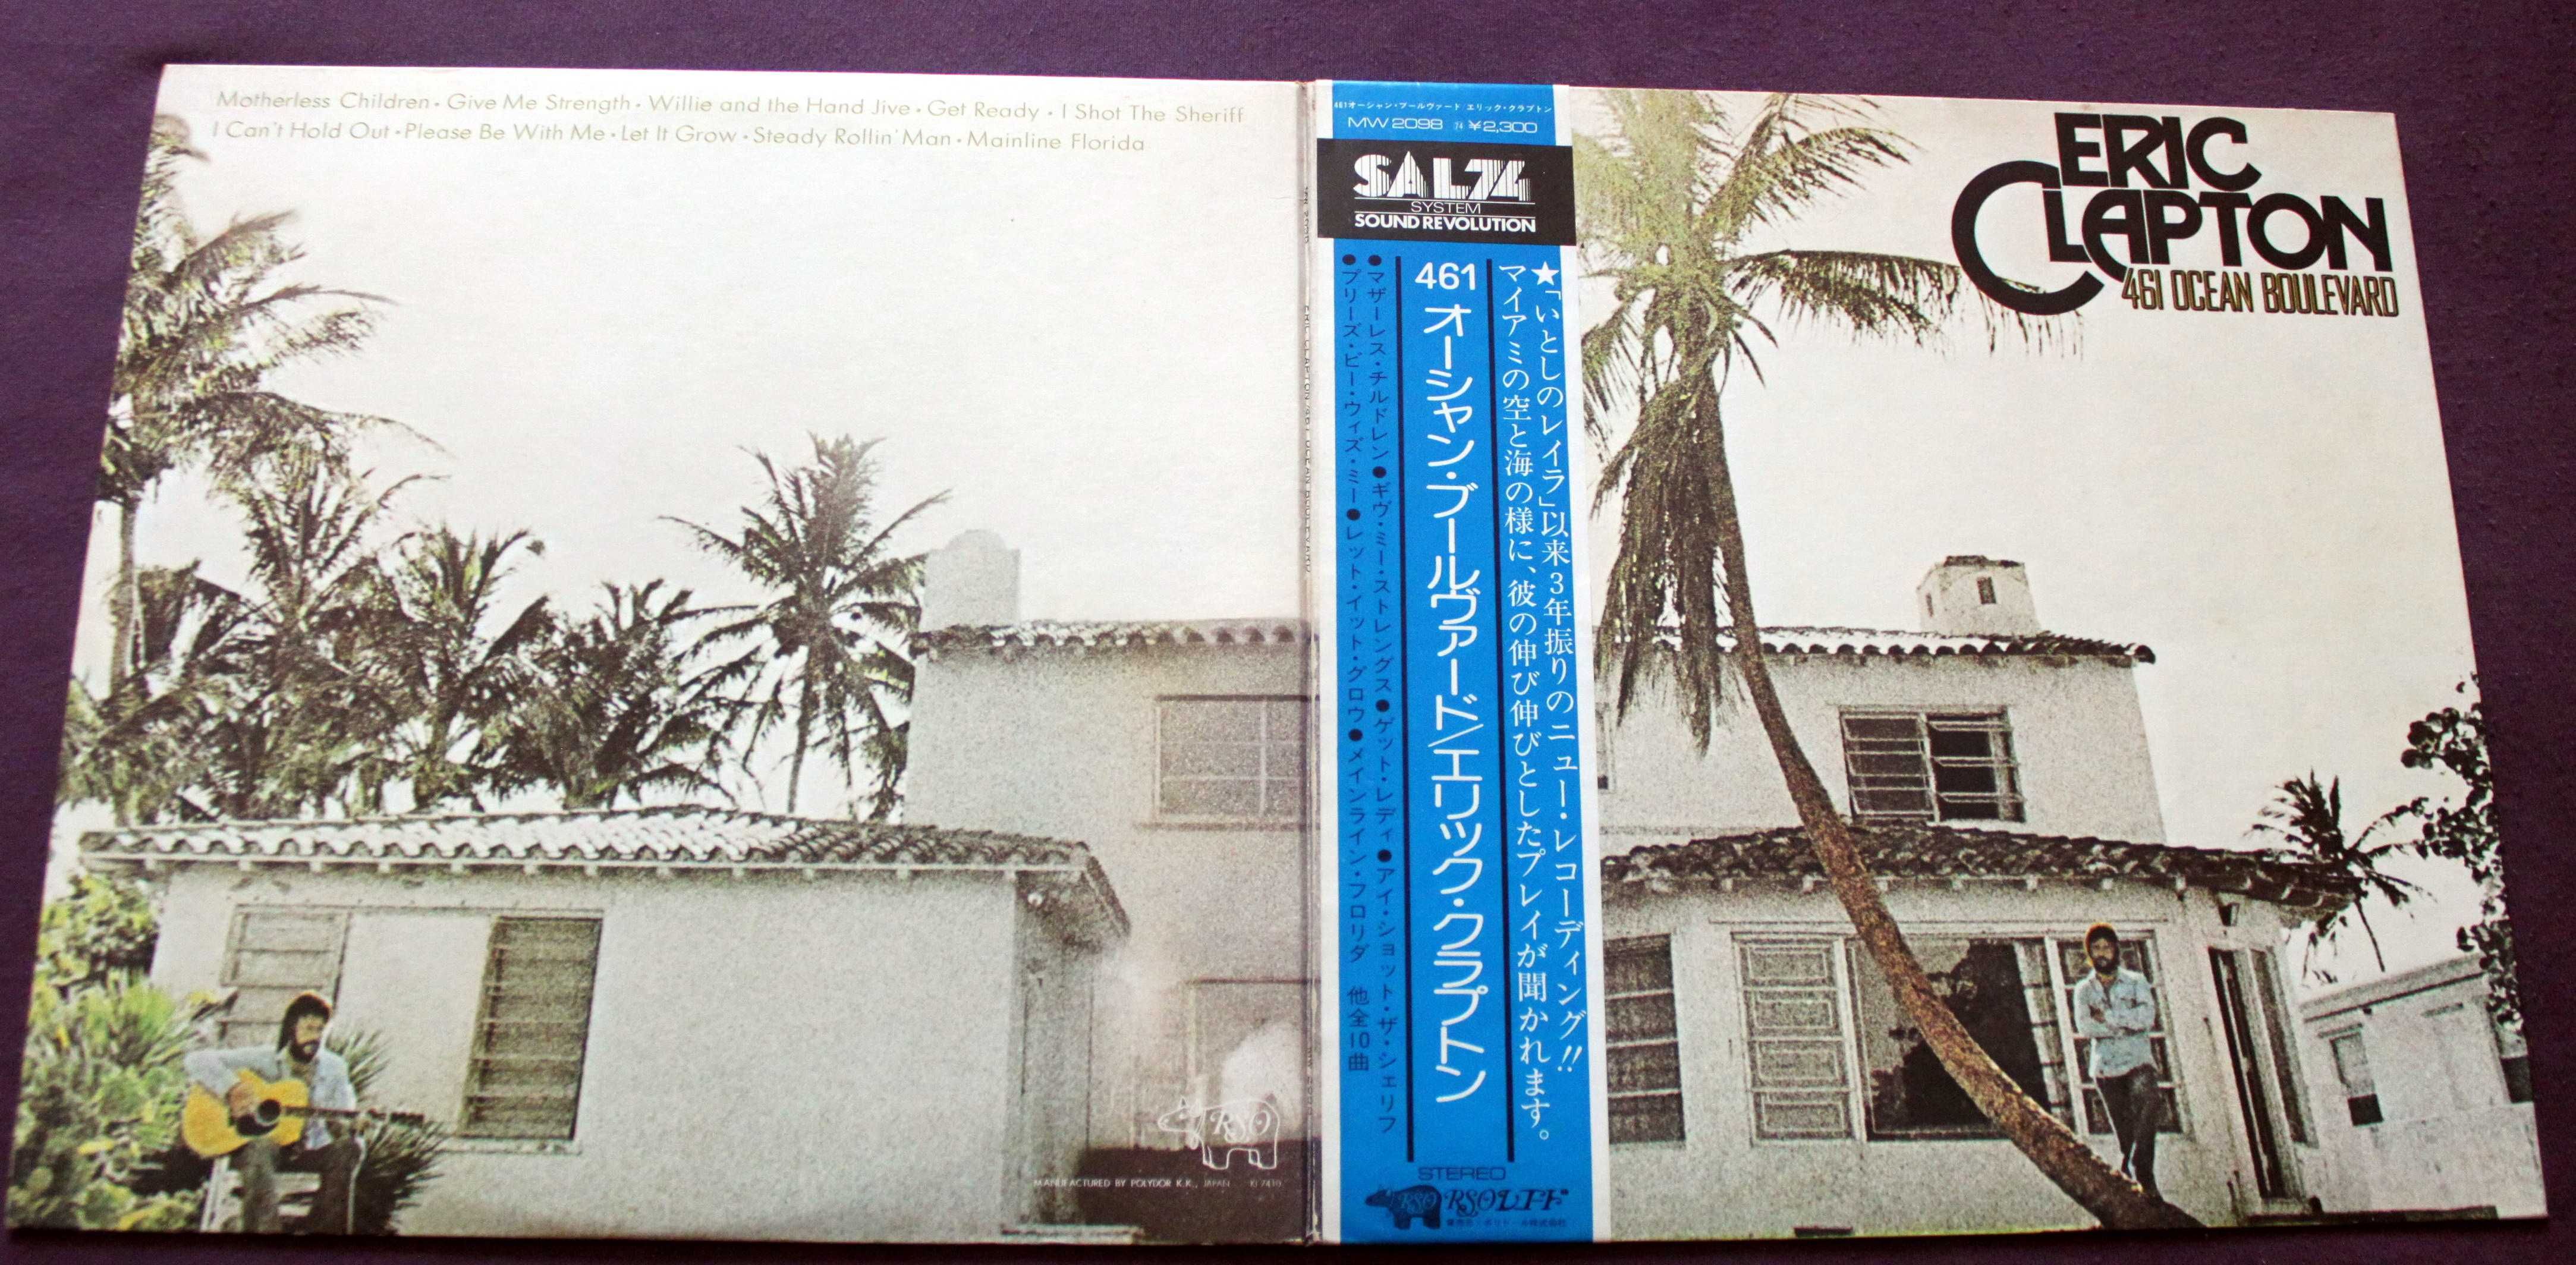 Eric Clapton LP JAPAN 461 Ocean Boulevard